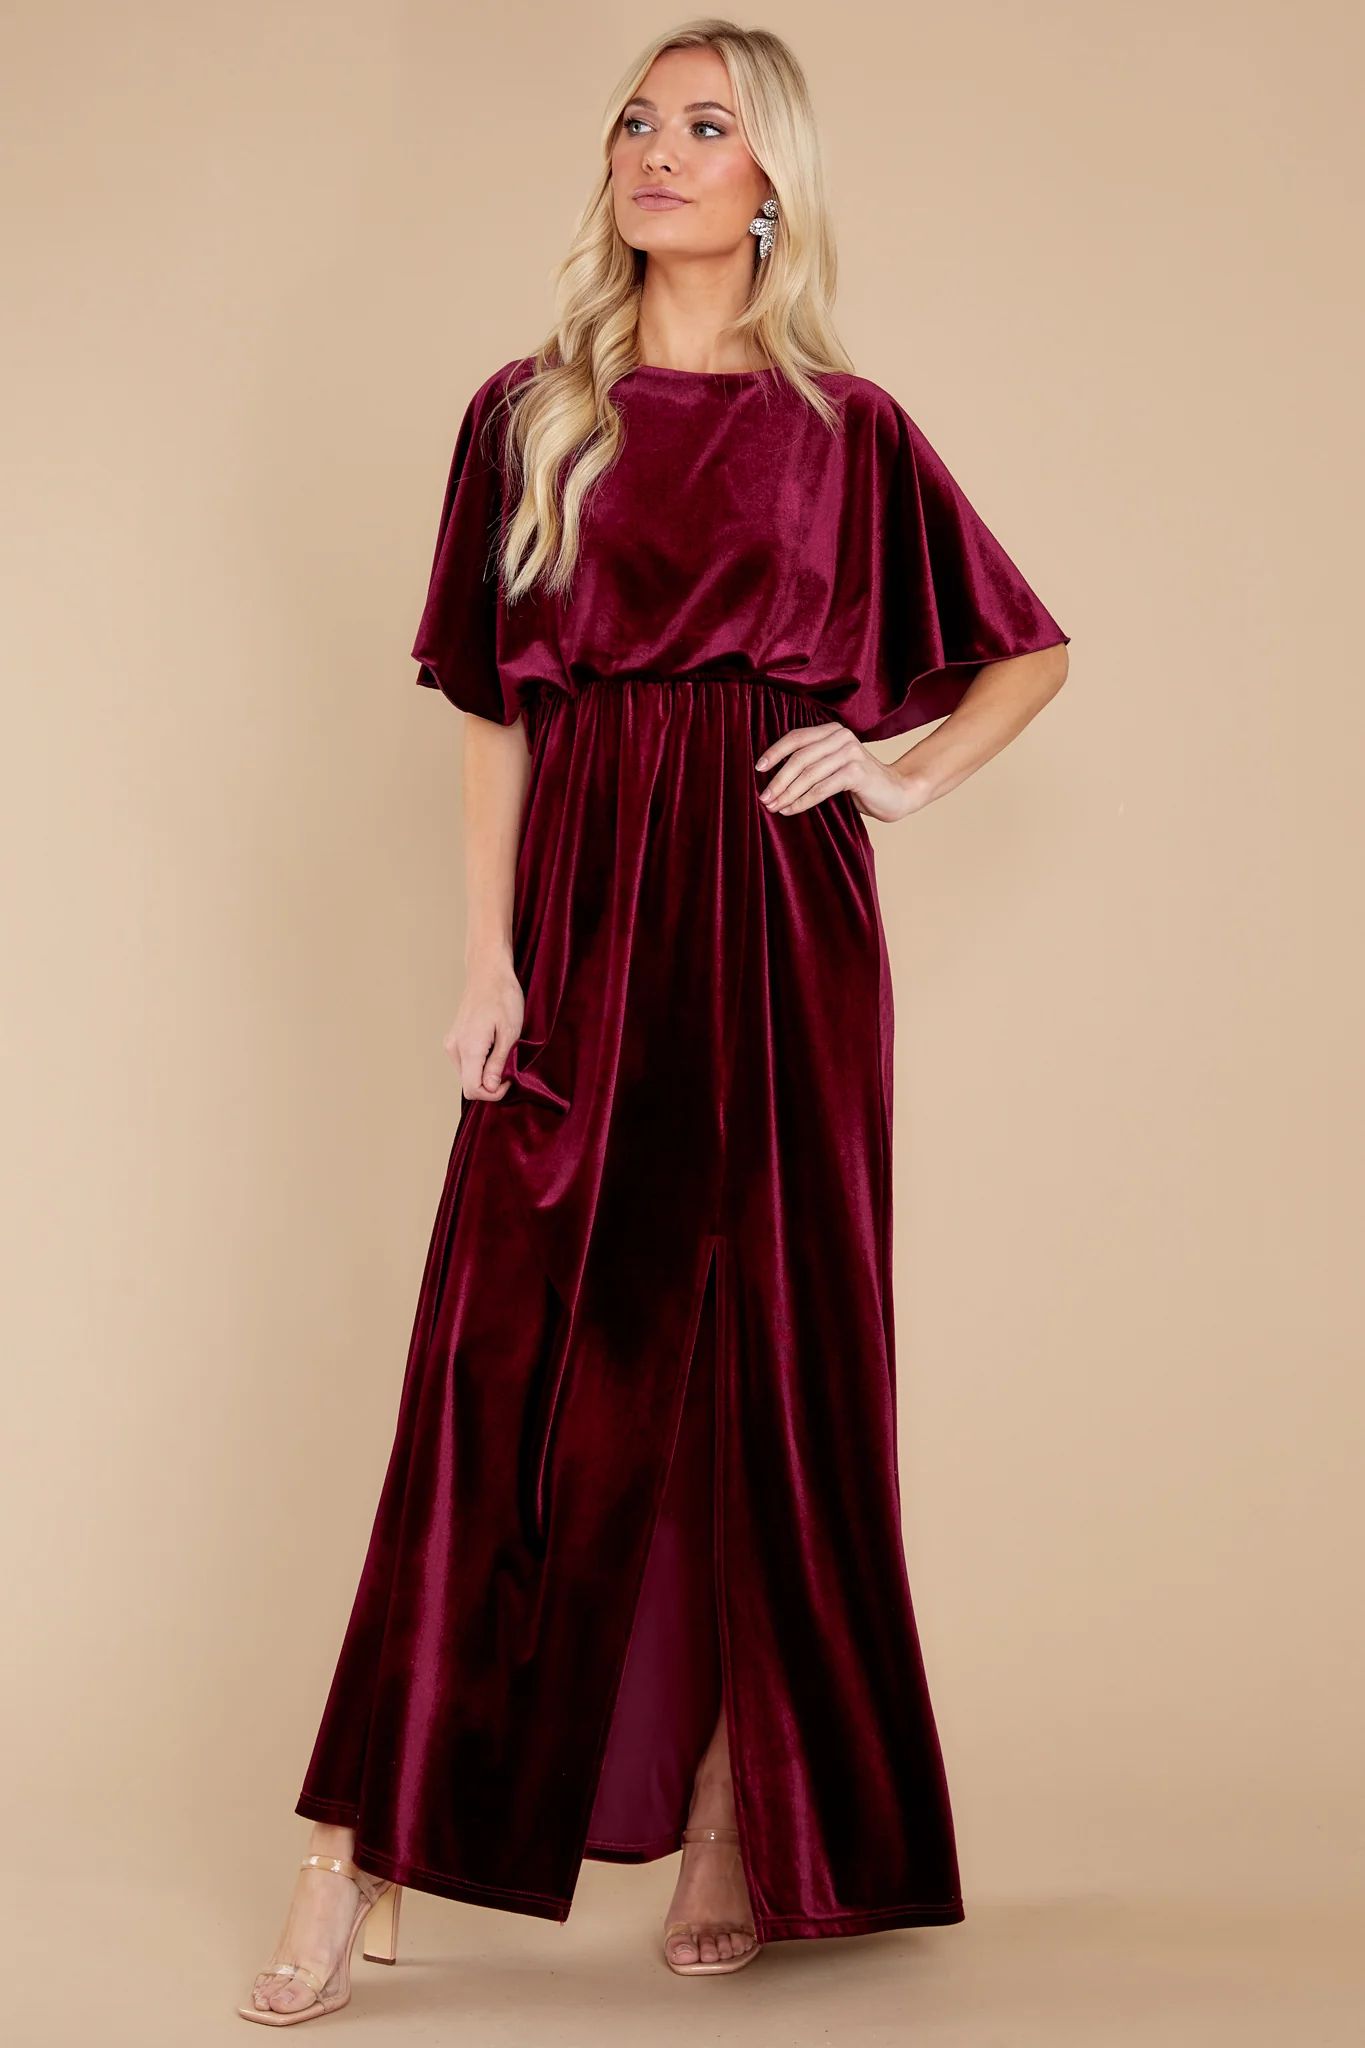 Ready For Tonight Merlot Velvet Maxi Dress | Red Dress 